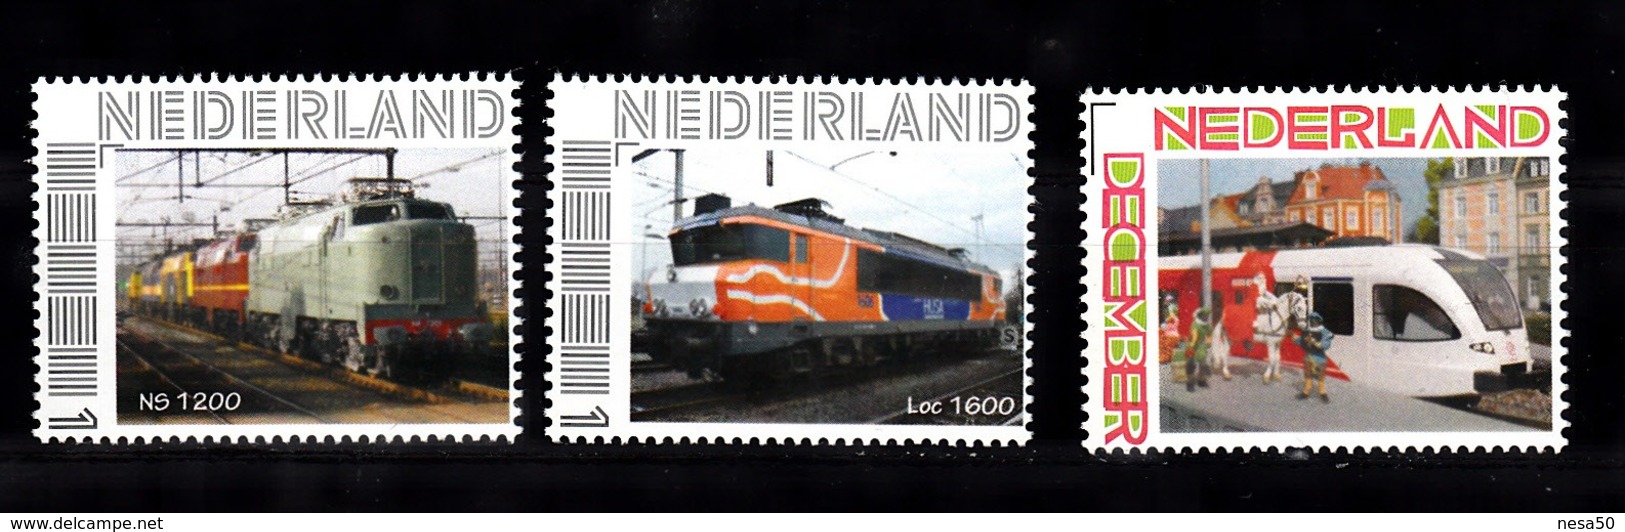 Trein, Train, Locomotive, Eisenbahn  Nederland : NS1200 + LOc 1600 + Sinterklaas Bij Veolia - Trains